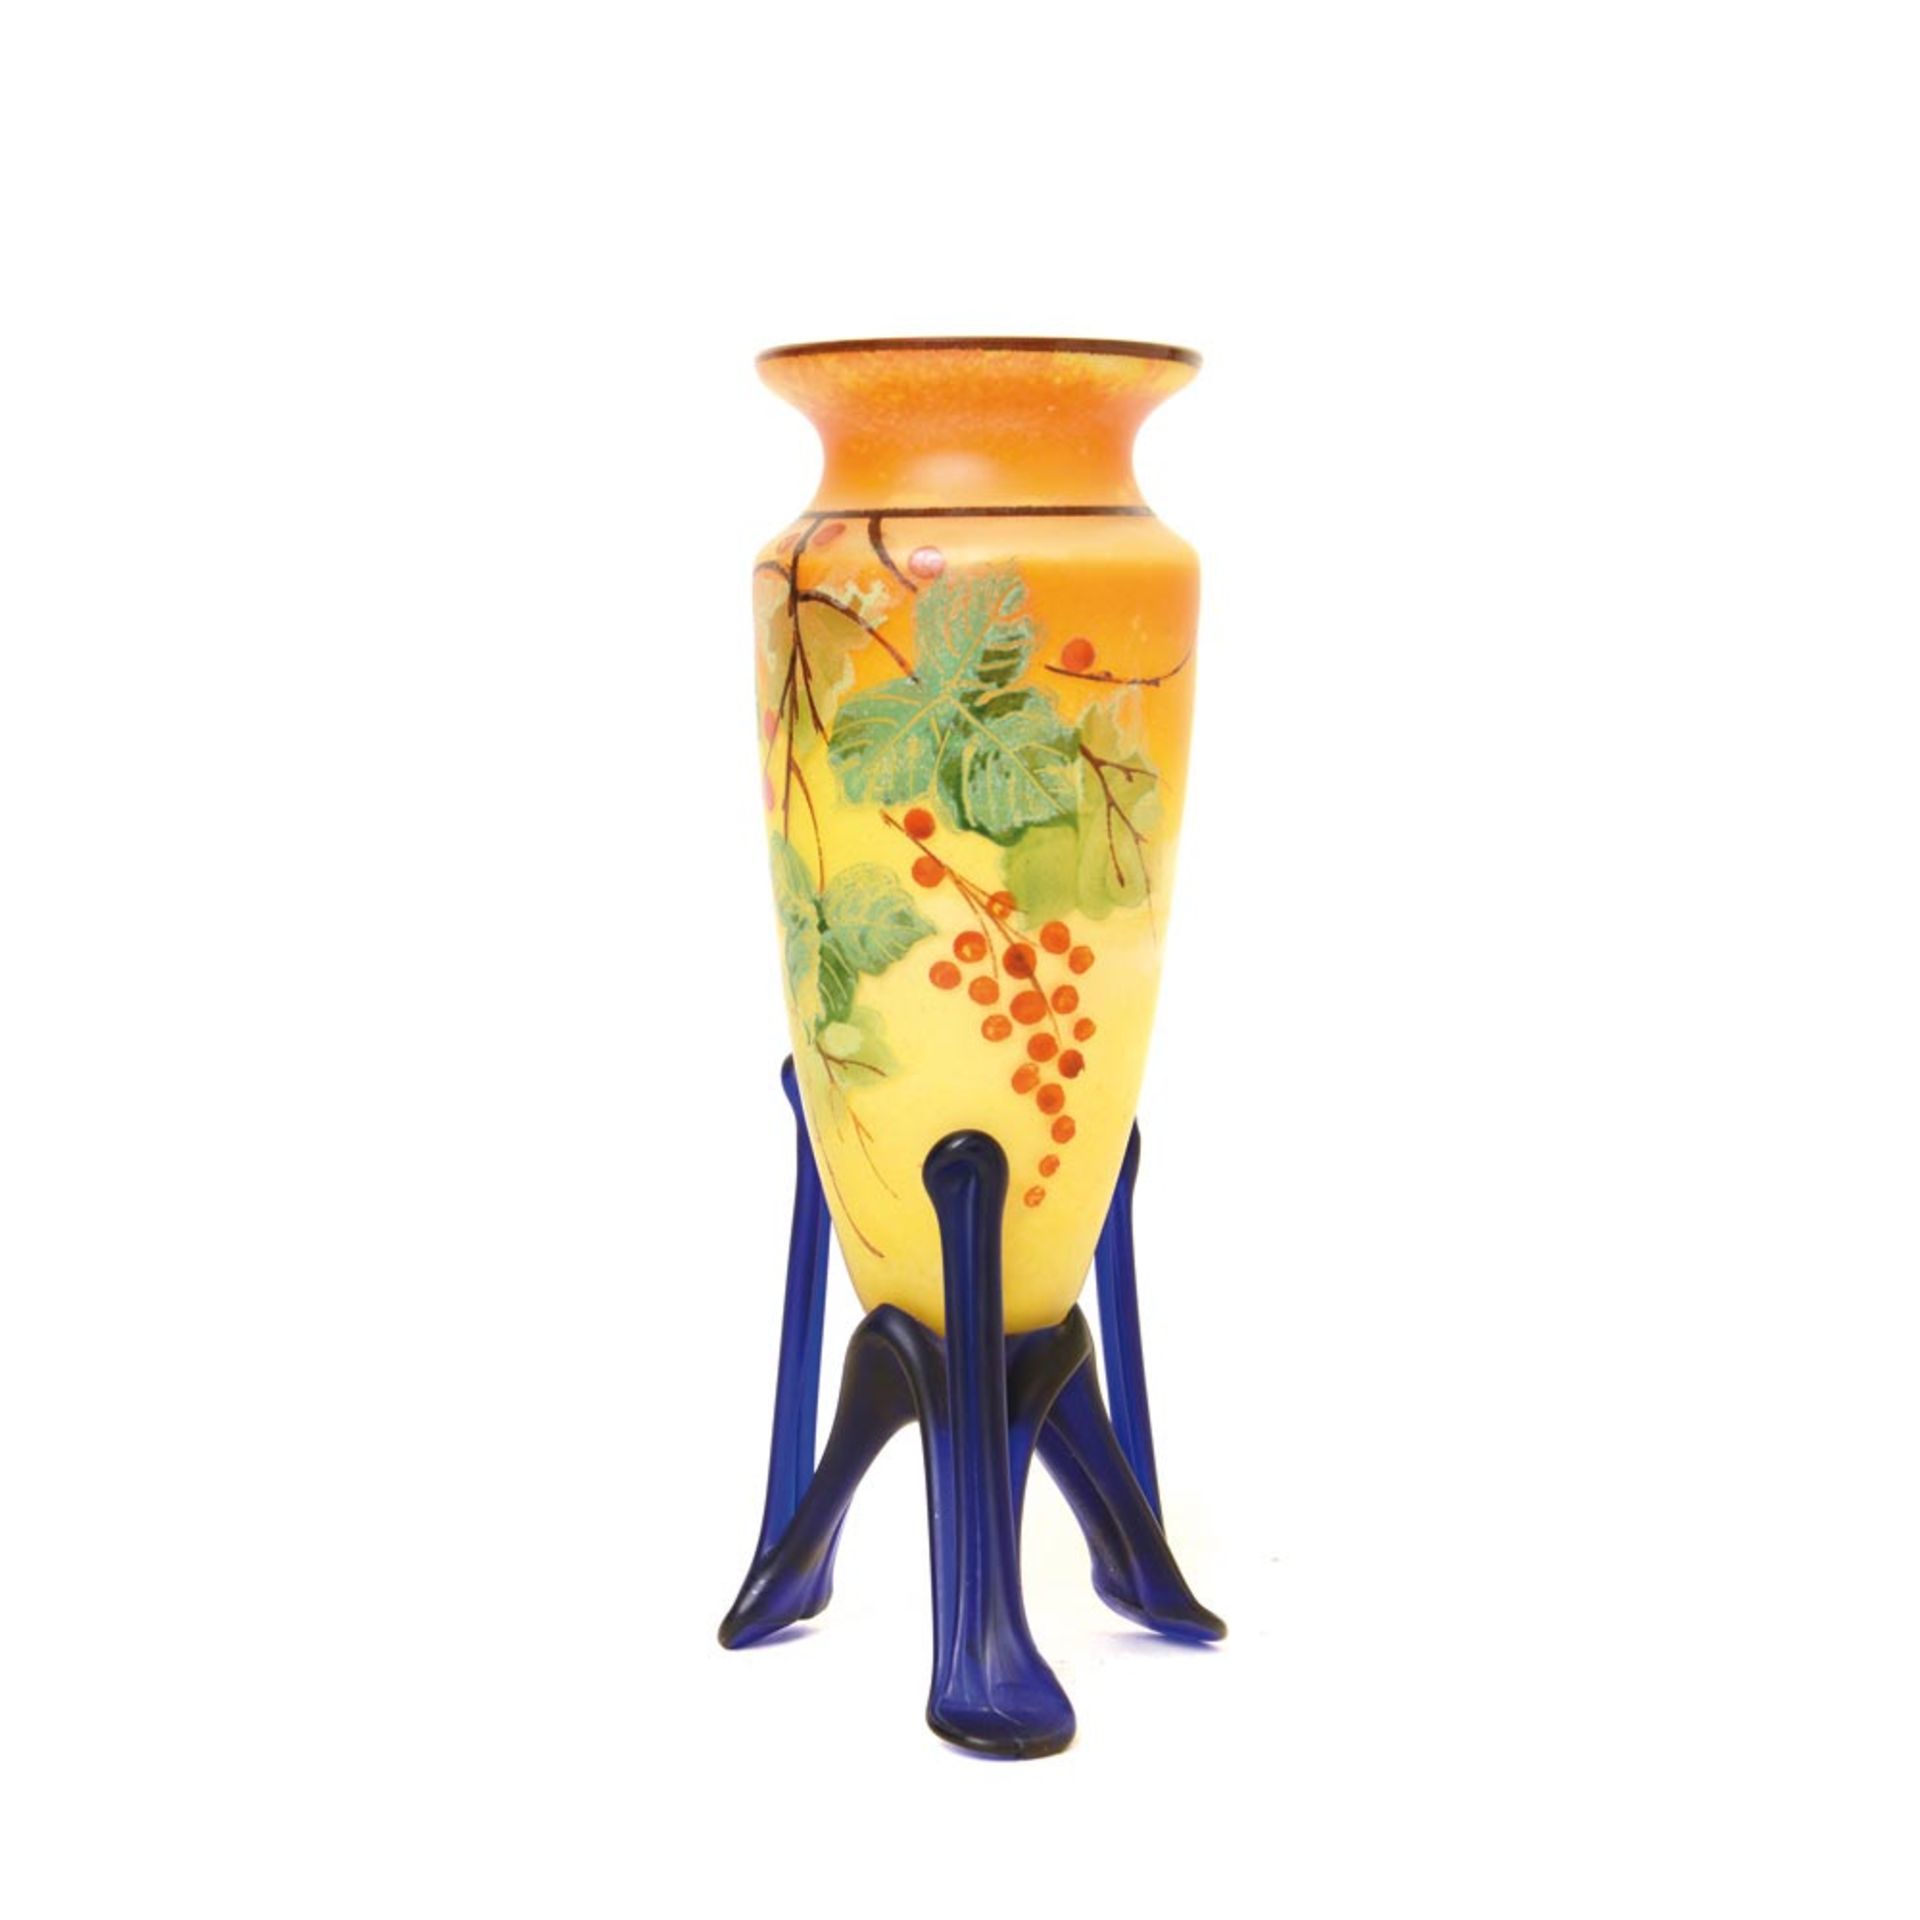 Art Deco enamelled glass vase